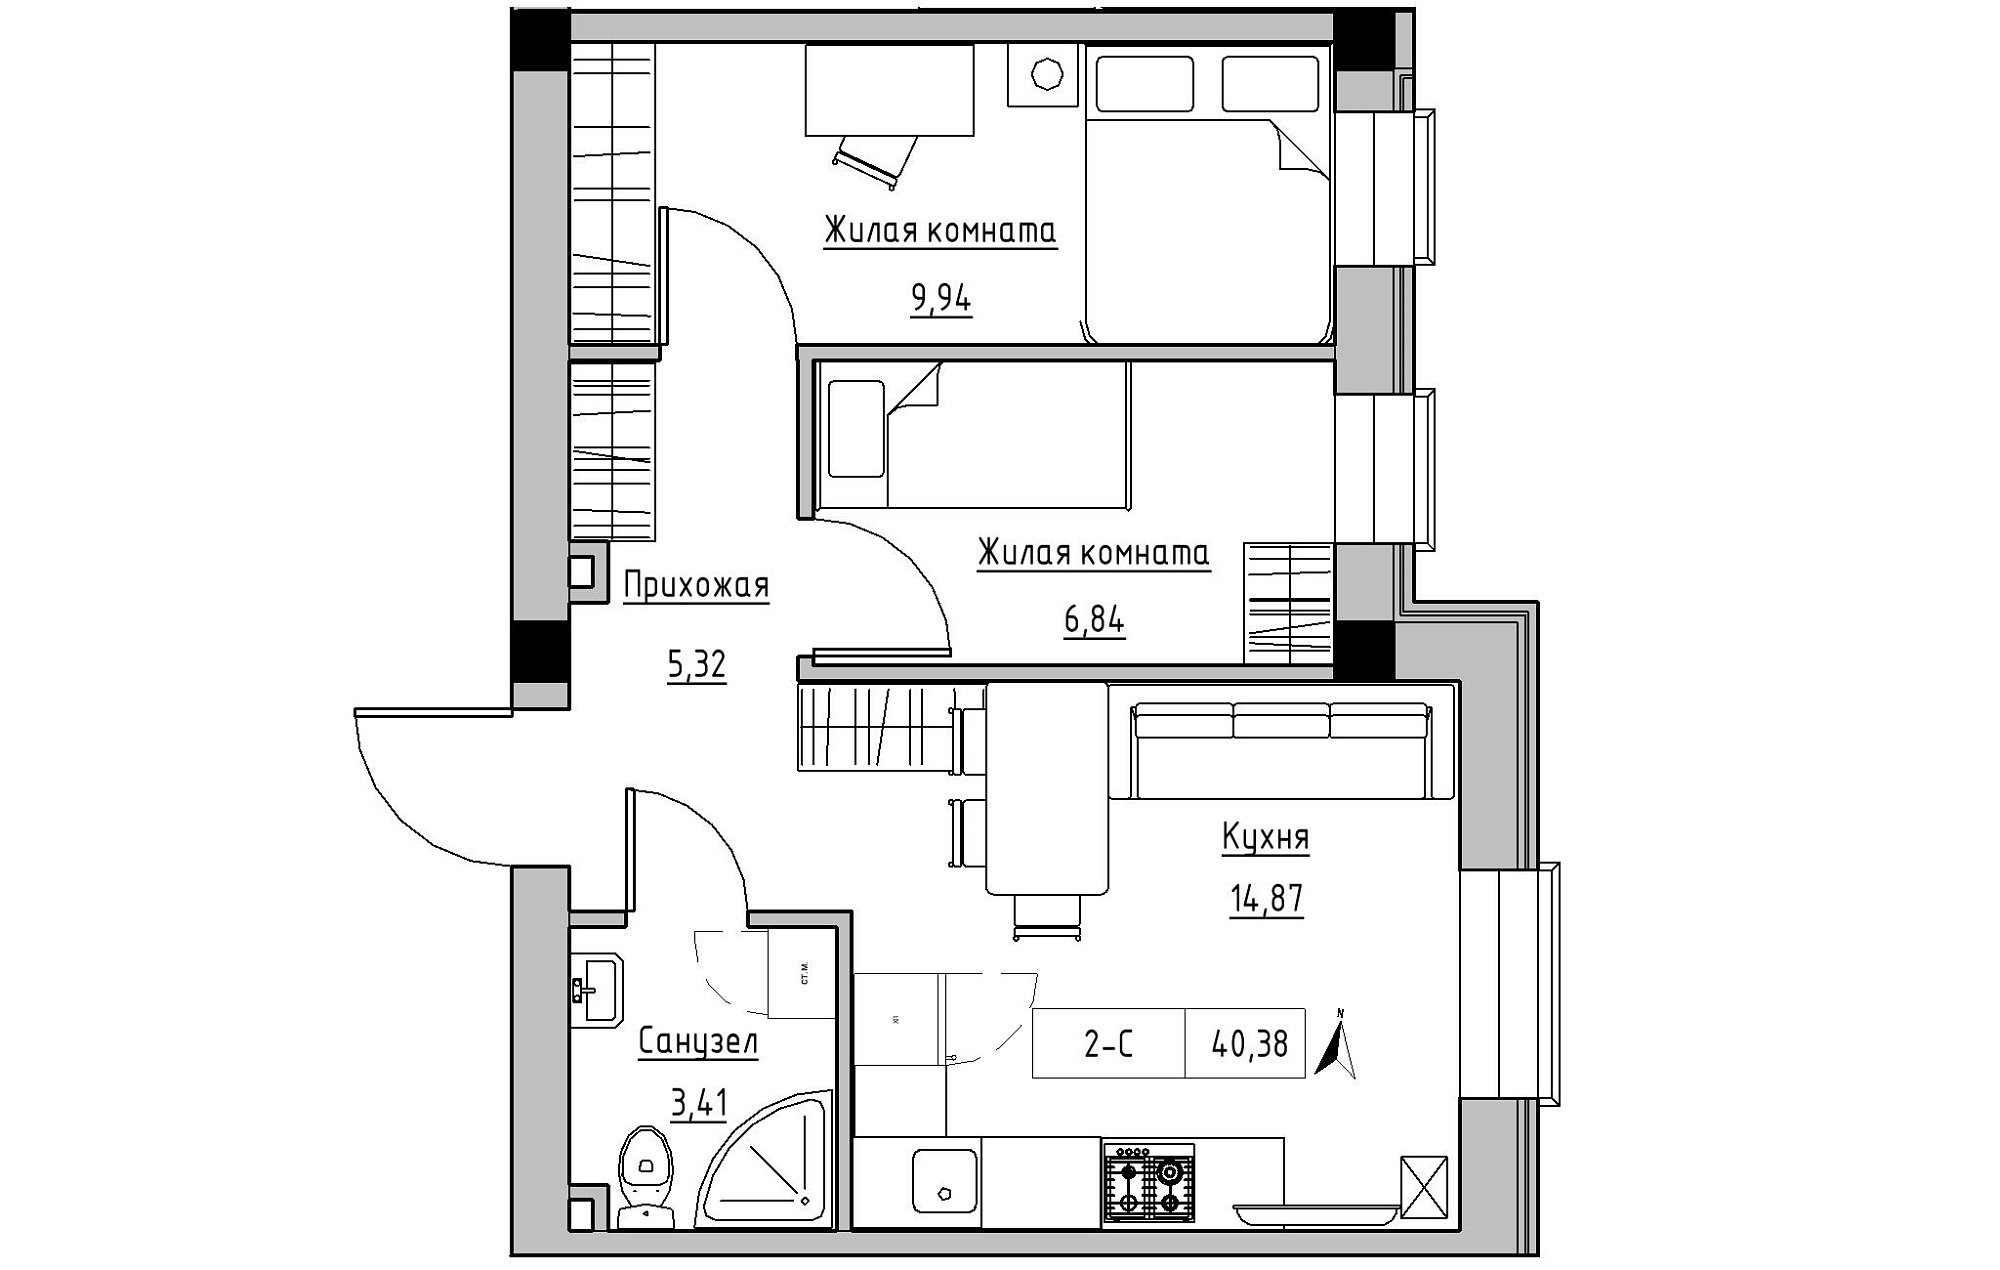 Планировка 2-к квартира площей 40.38м2, KS-019-01/0006.